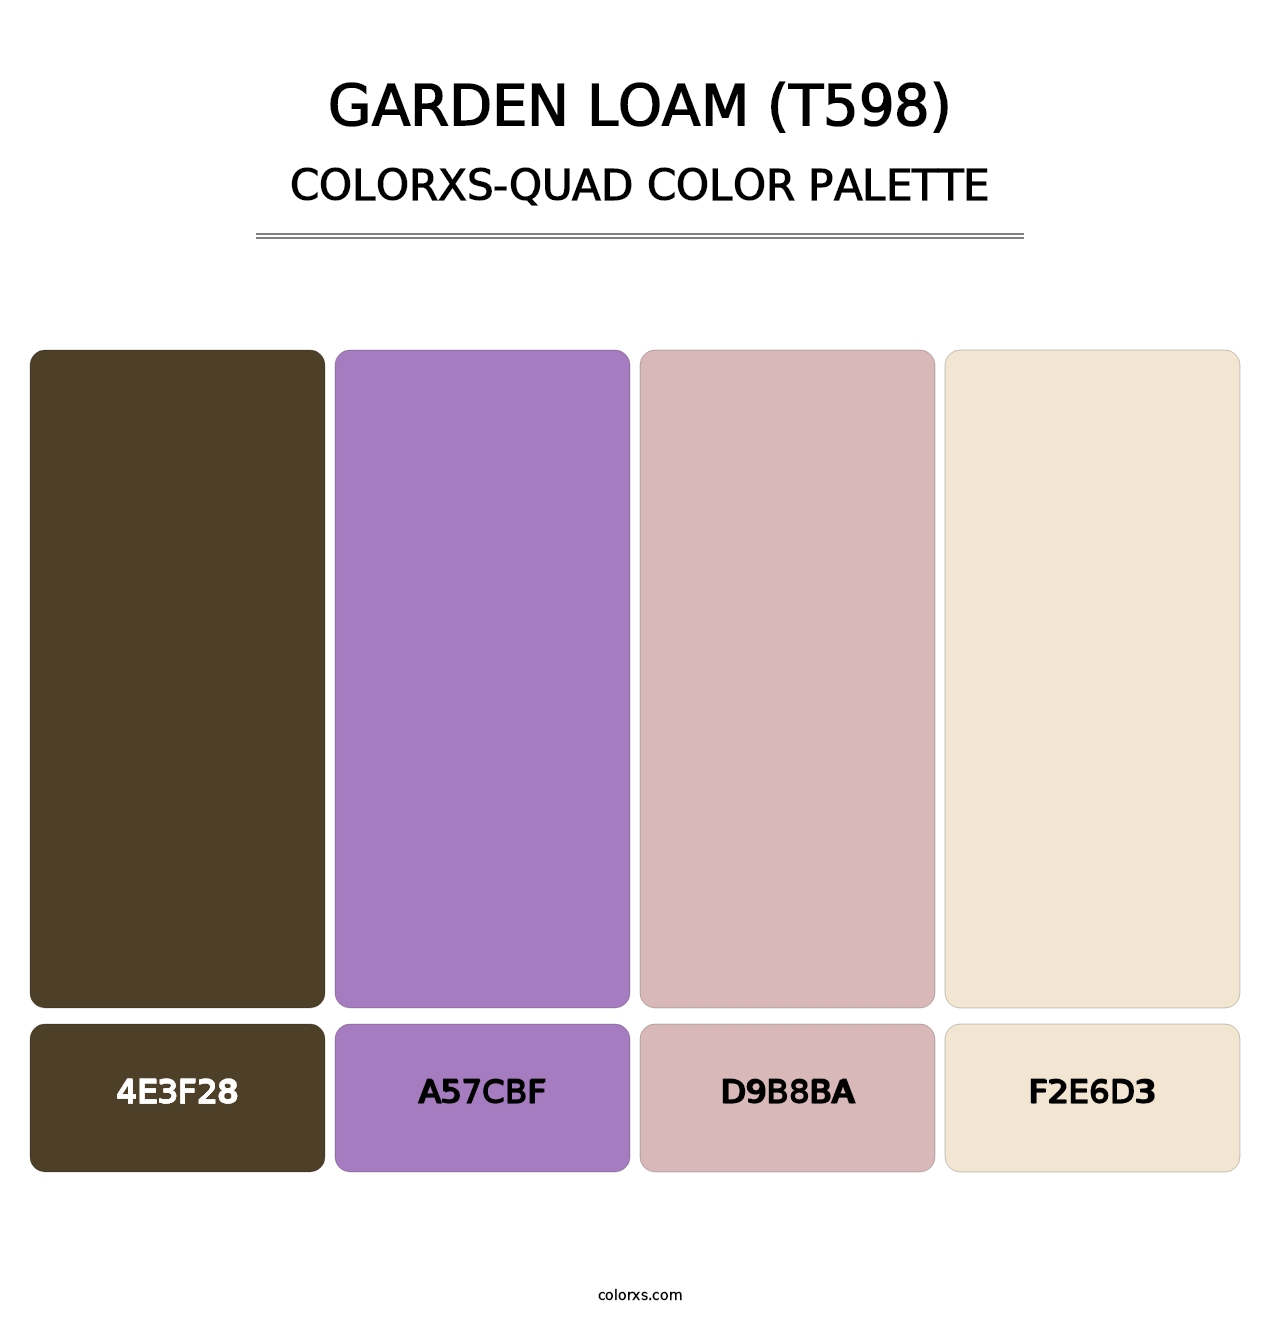 Garden Loam (T598) - Colorxs Quad Palette